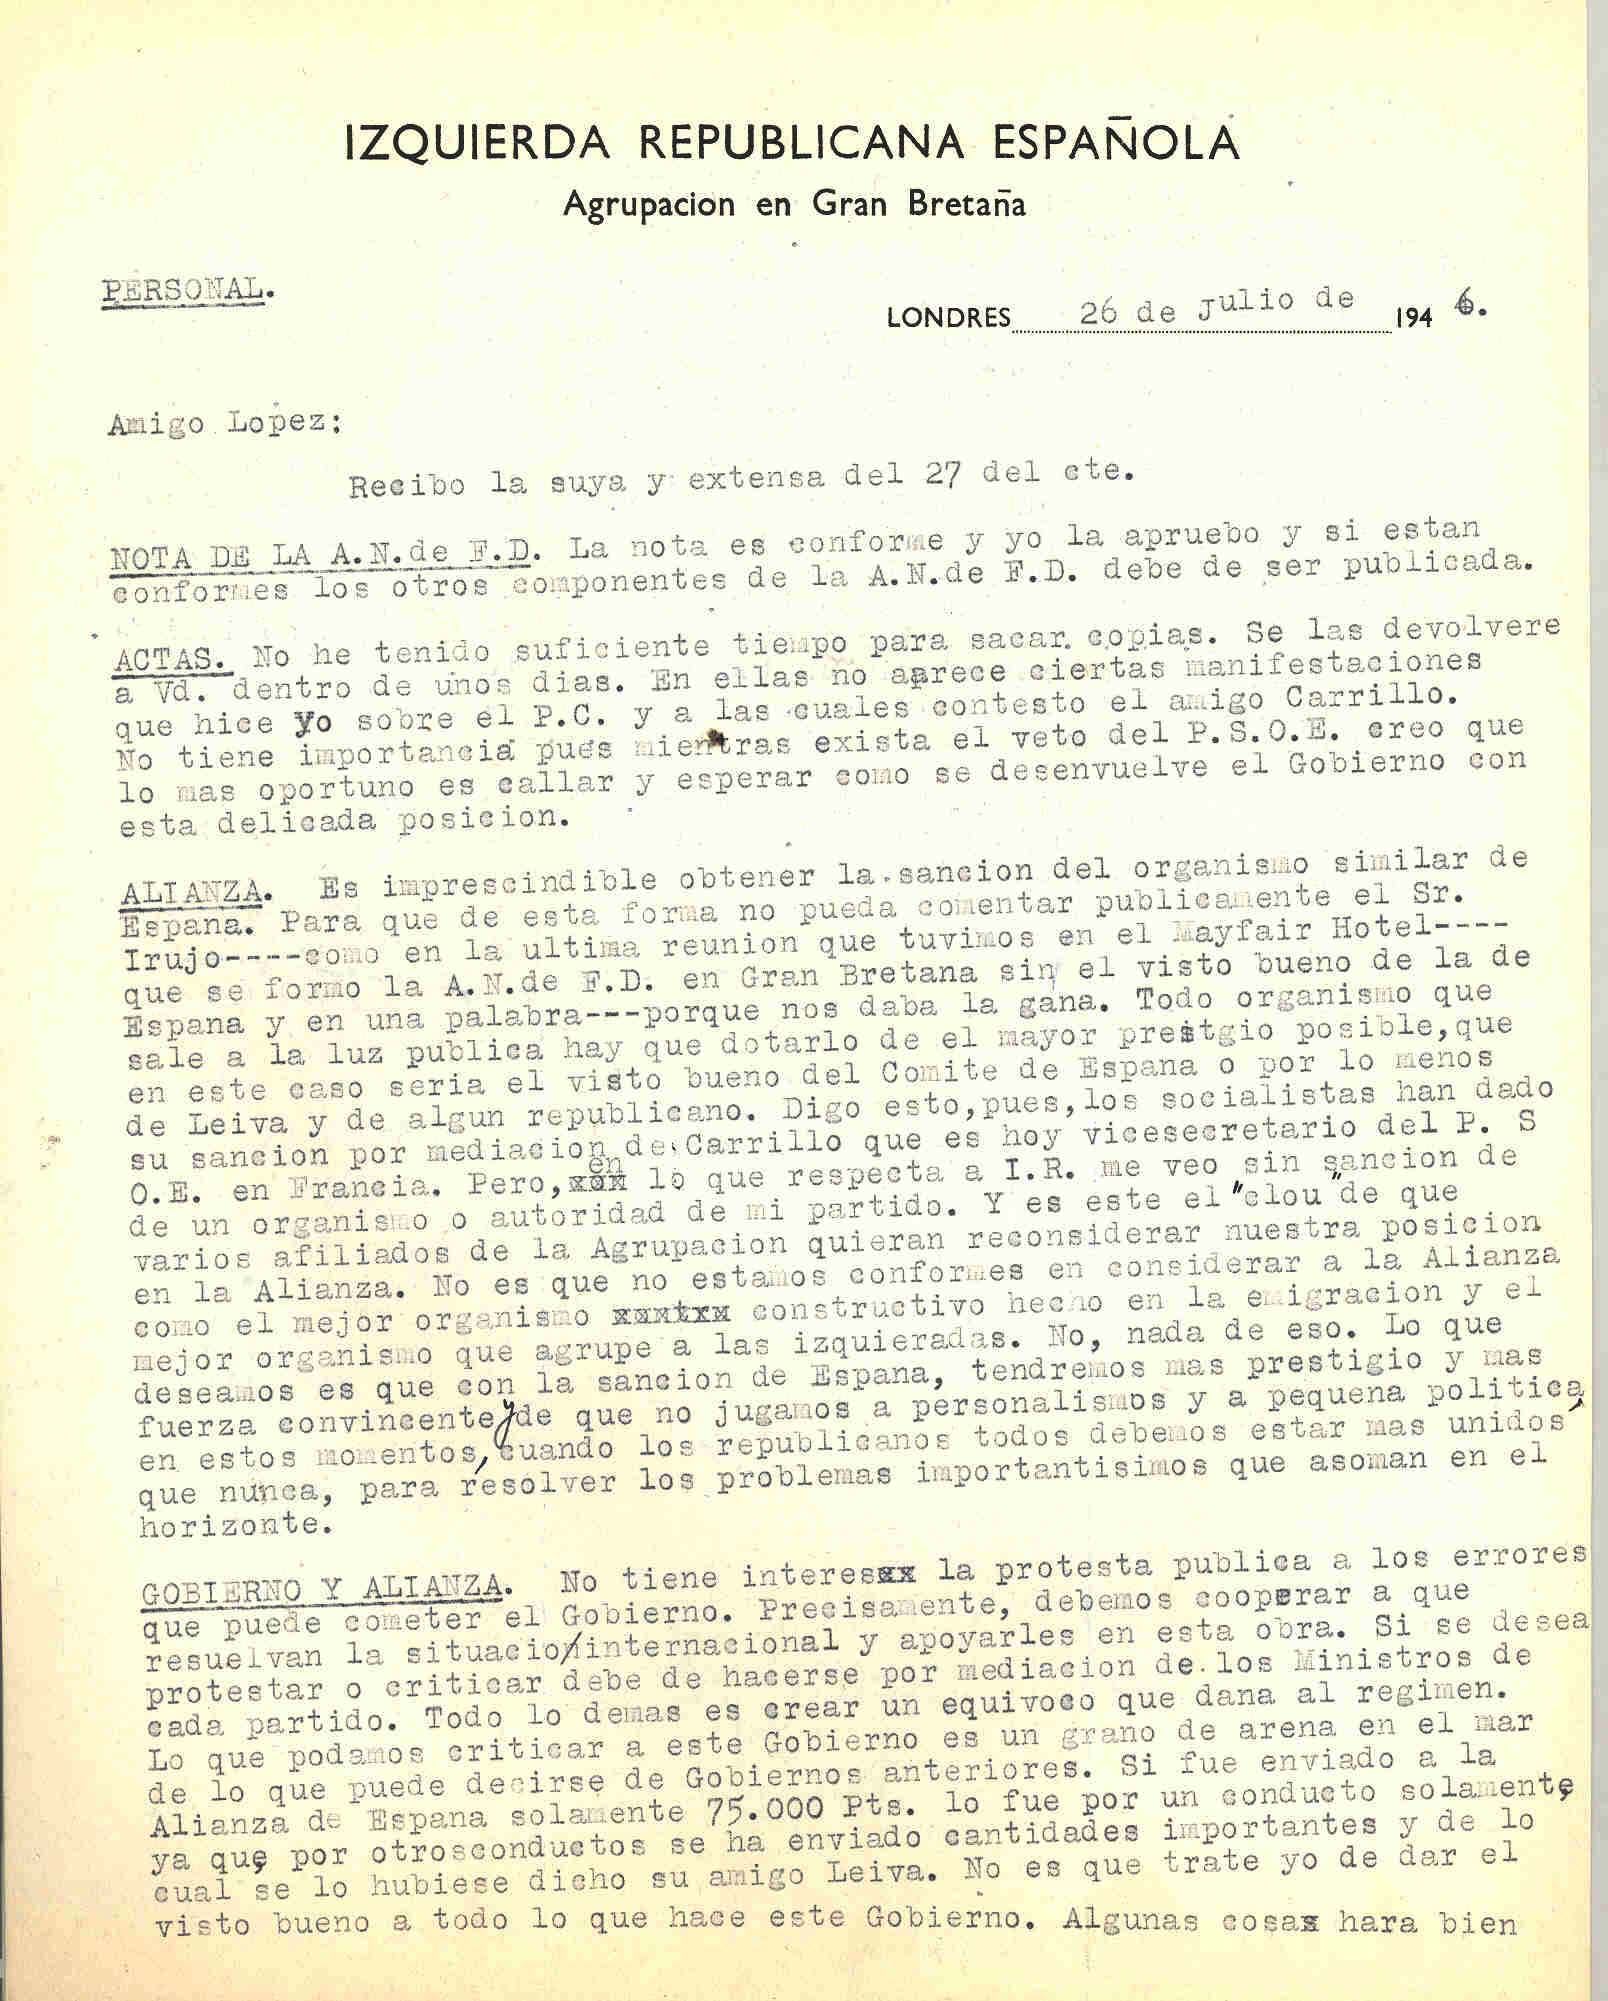 Carta de Roque Victoria opinando que es imprescindinble obtener la sanción del organismo similar de la ANFD de España.